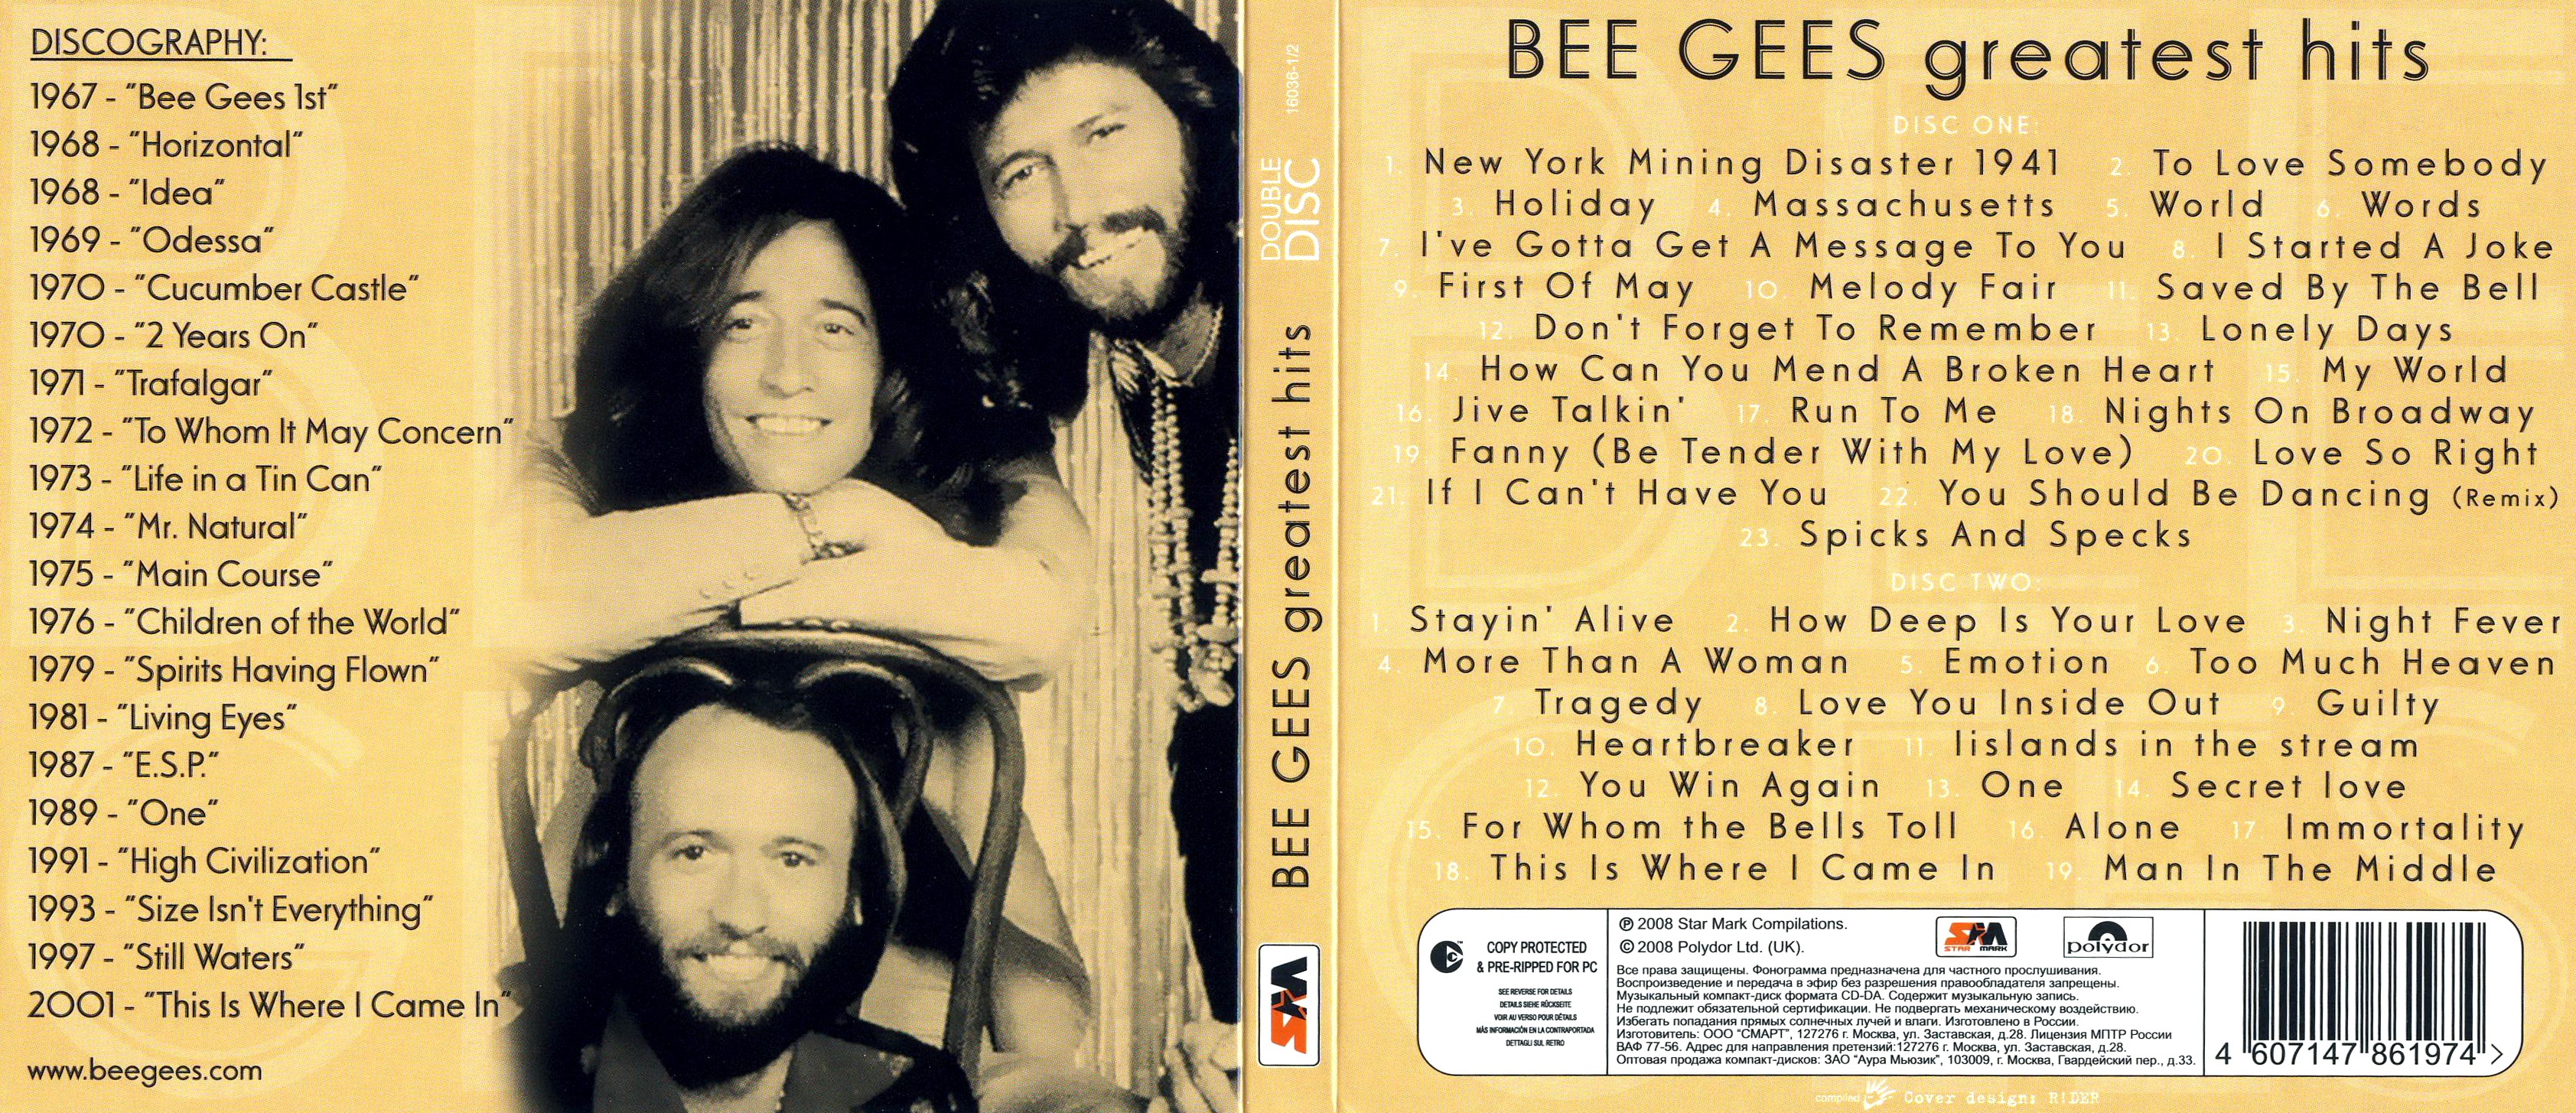 Bee Gees - 10 Heartbreaker.mp3. 